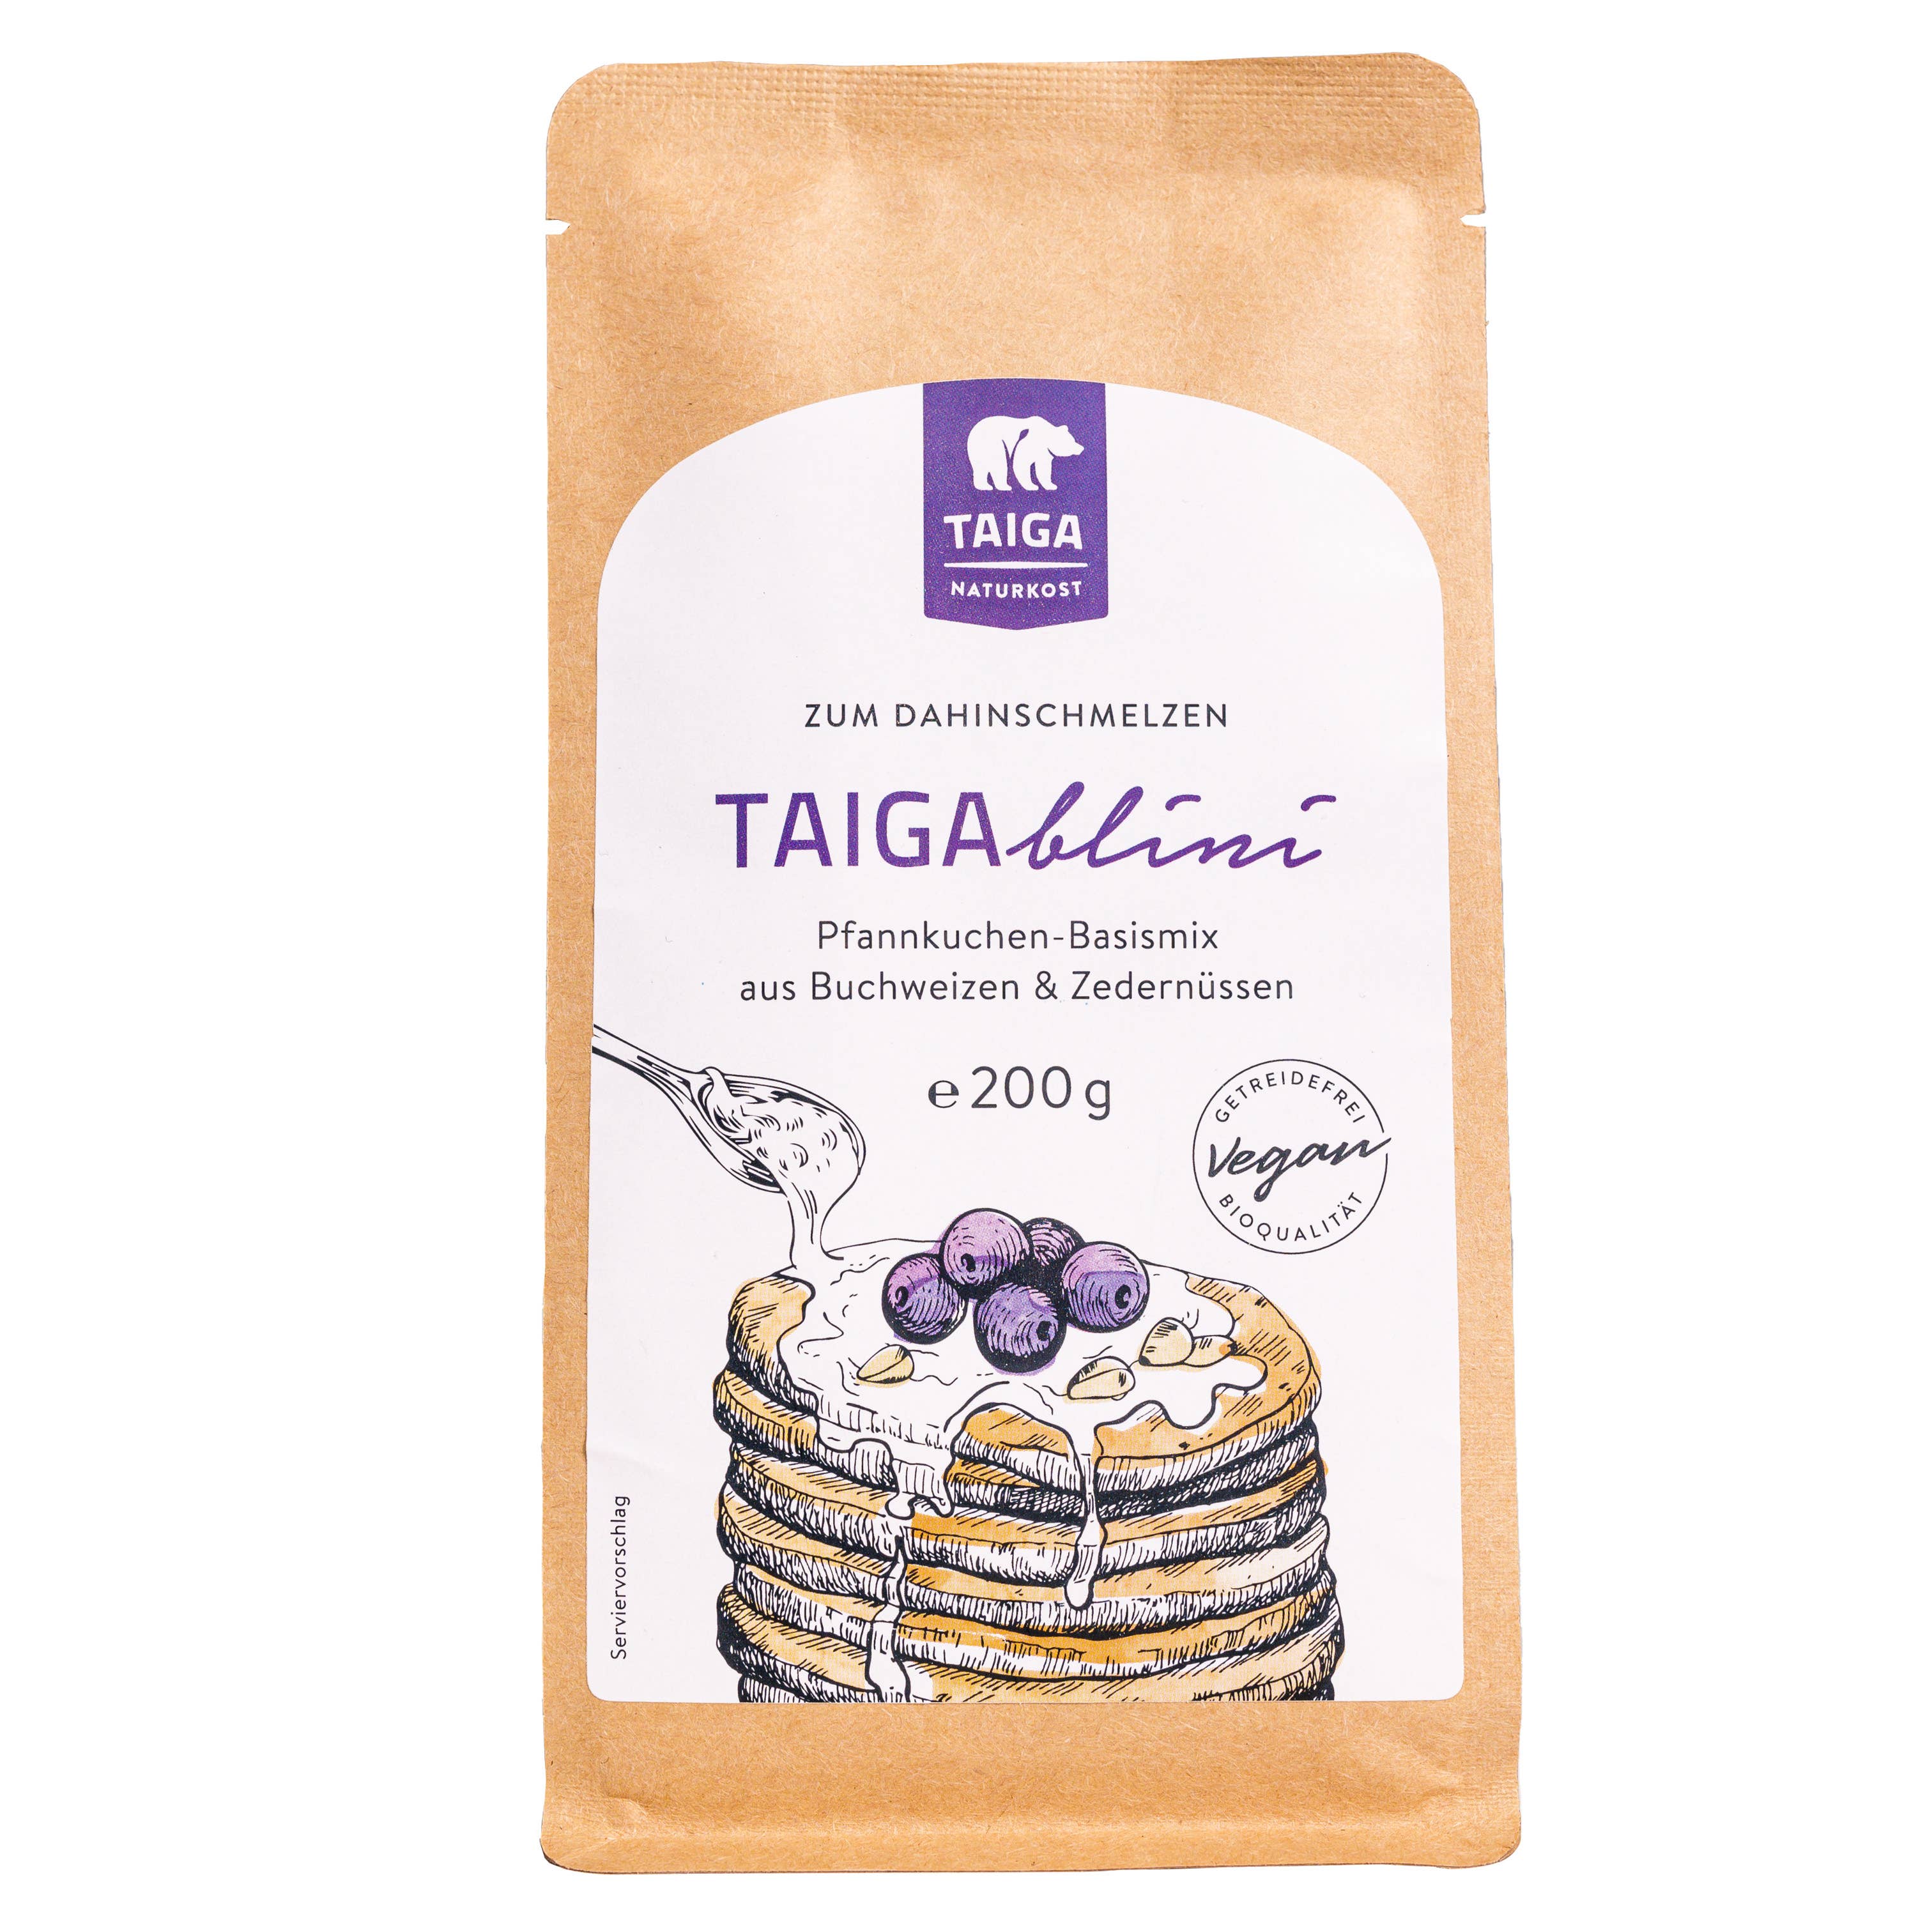 can i use regular flour for taigan treats